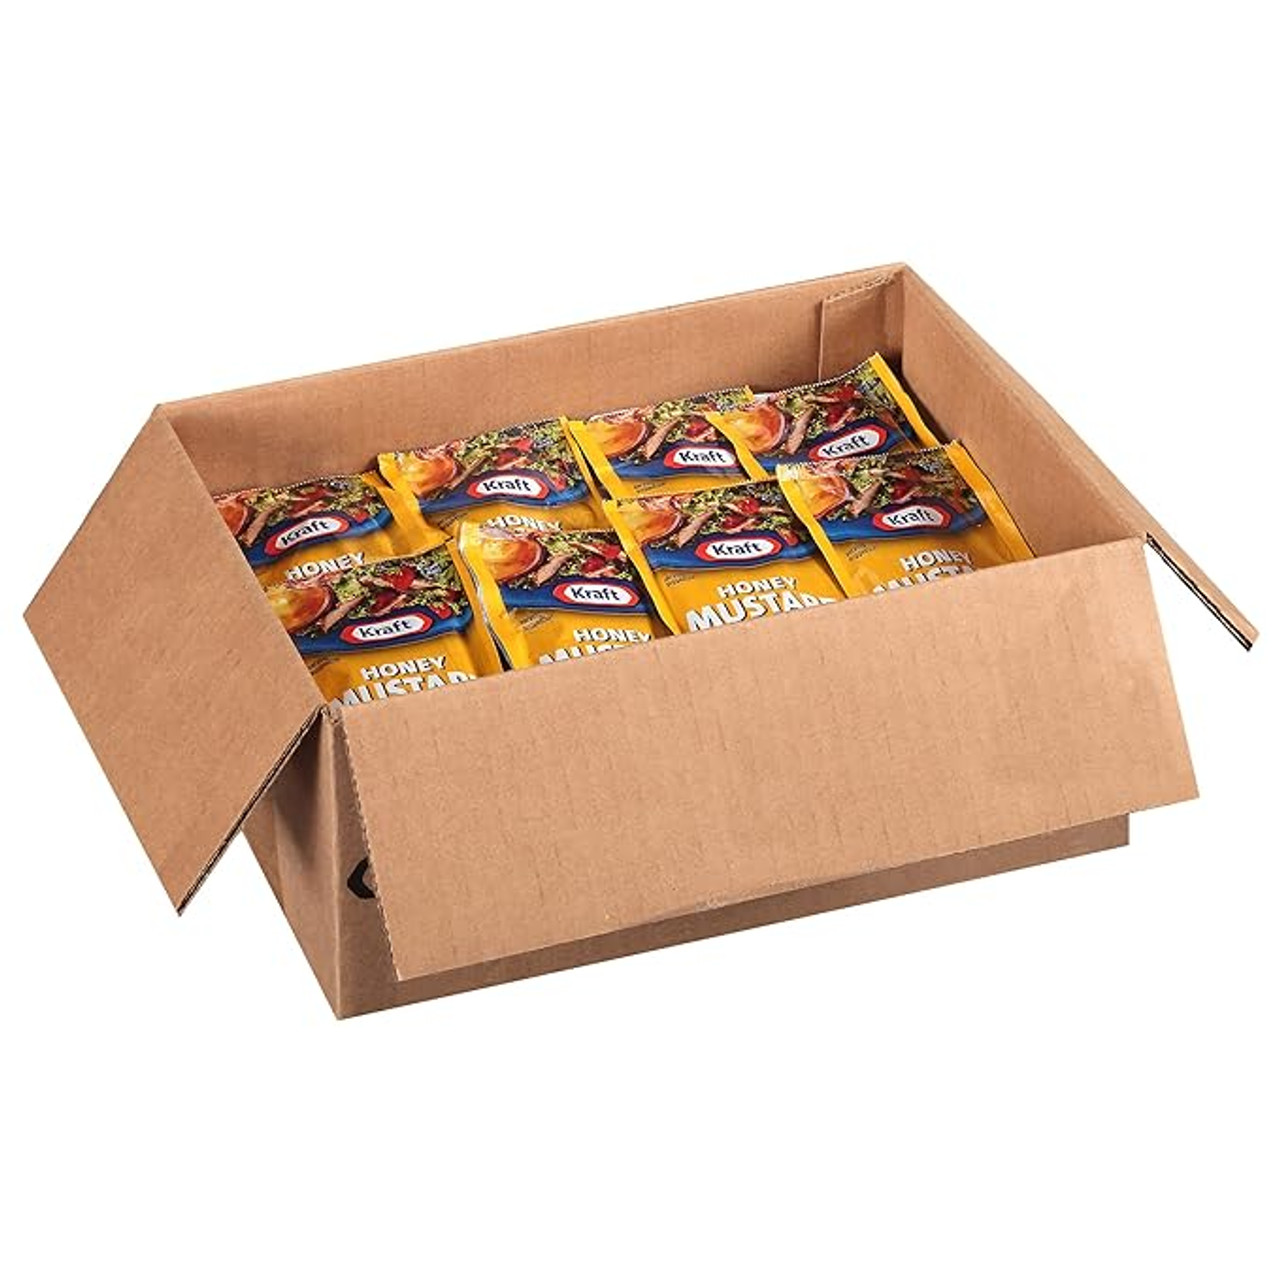 Kraft Honey Mustard Dressing Packet - 1.5 oz. (60/Case), Creamy Richness - Chicken Pieces